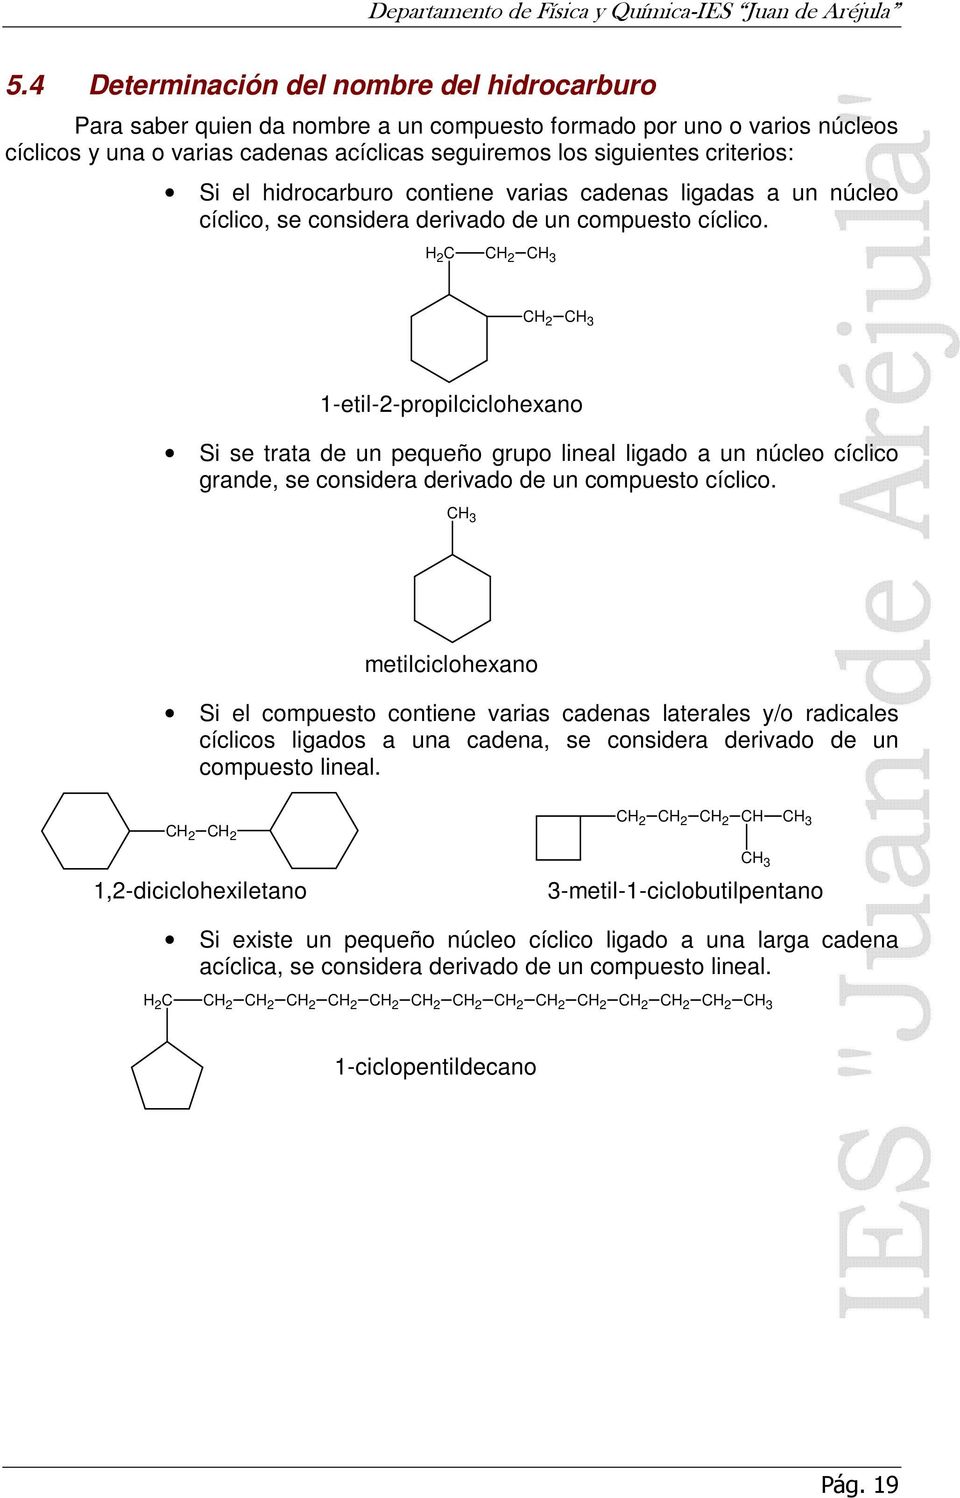 Si el hidrocarburo contiene varias cadenas ligadas a un núcleo cíclico, se considera derivado de un compuesto cíclico.